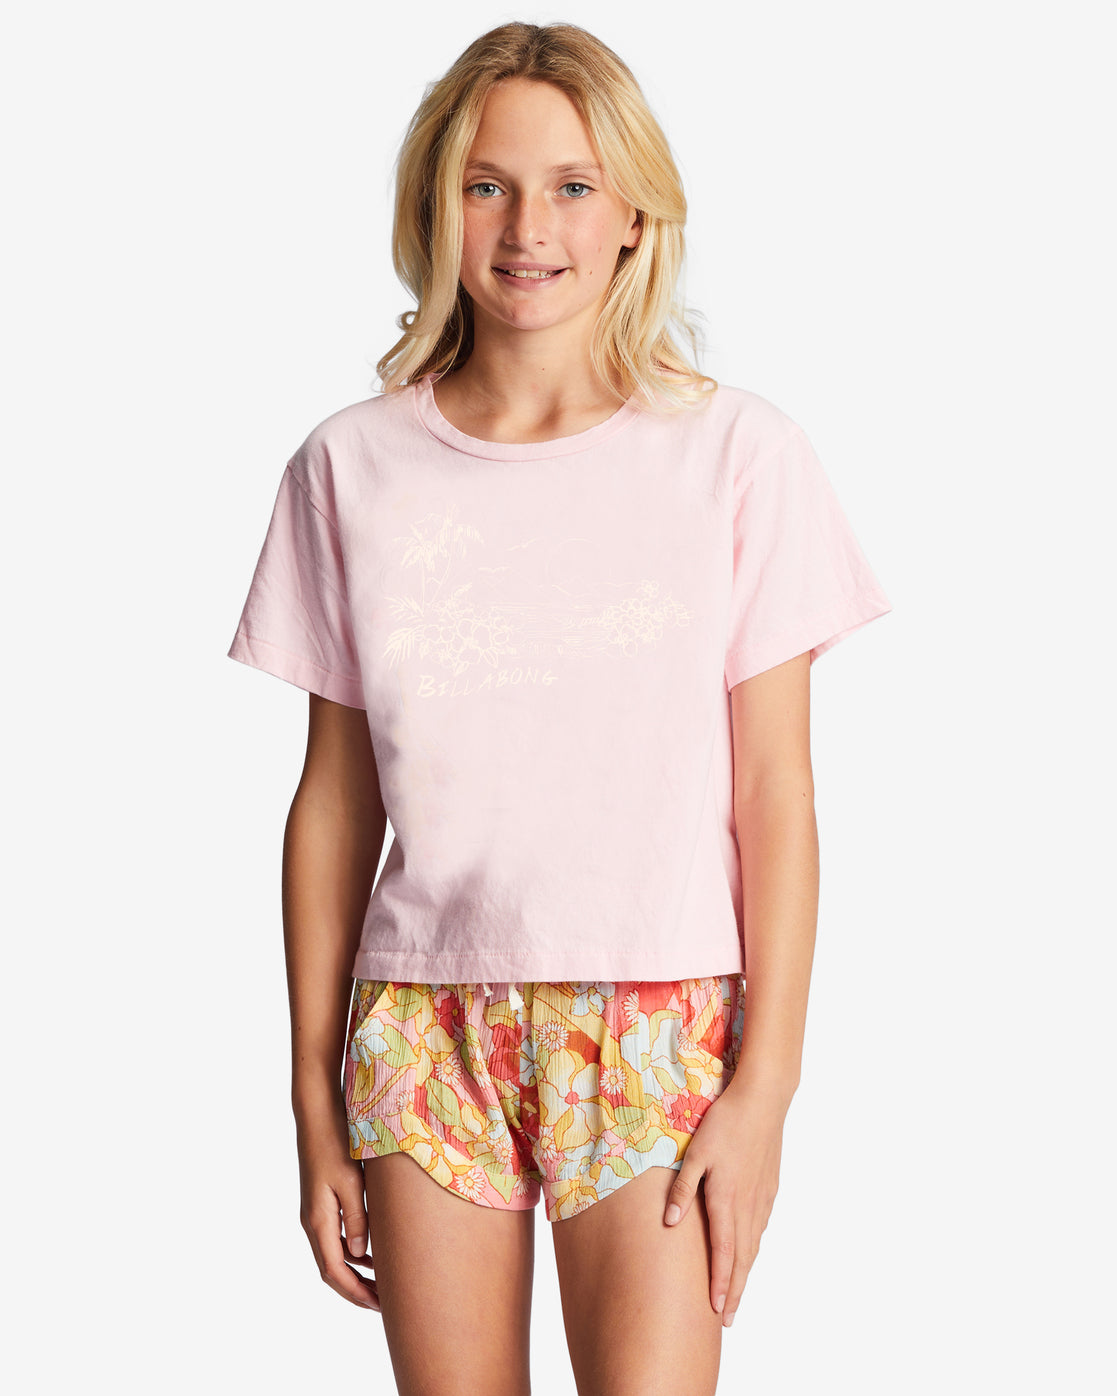 Girls 4-16 Spread Kindness T-Shirt - Soft Pink – Billabong.com